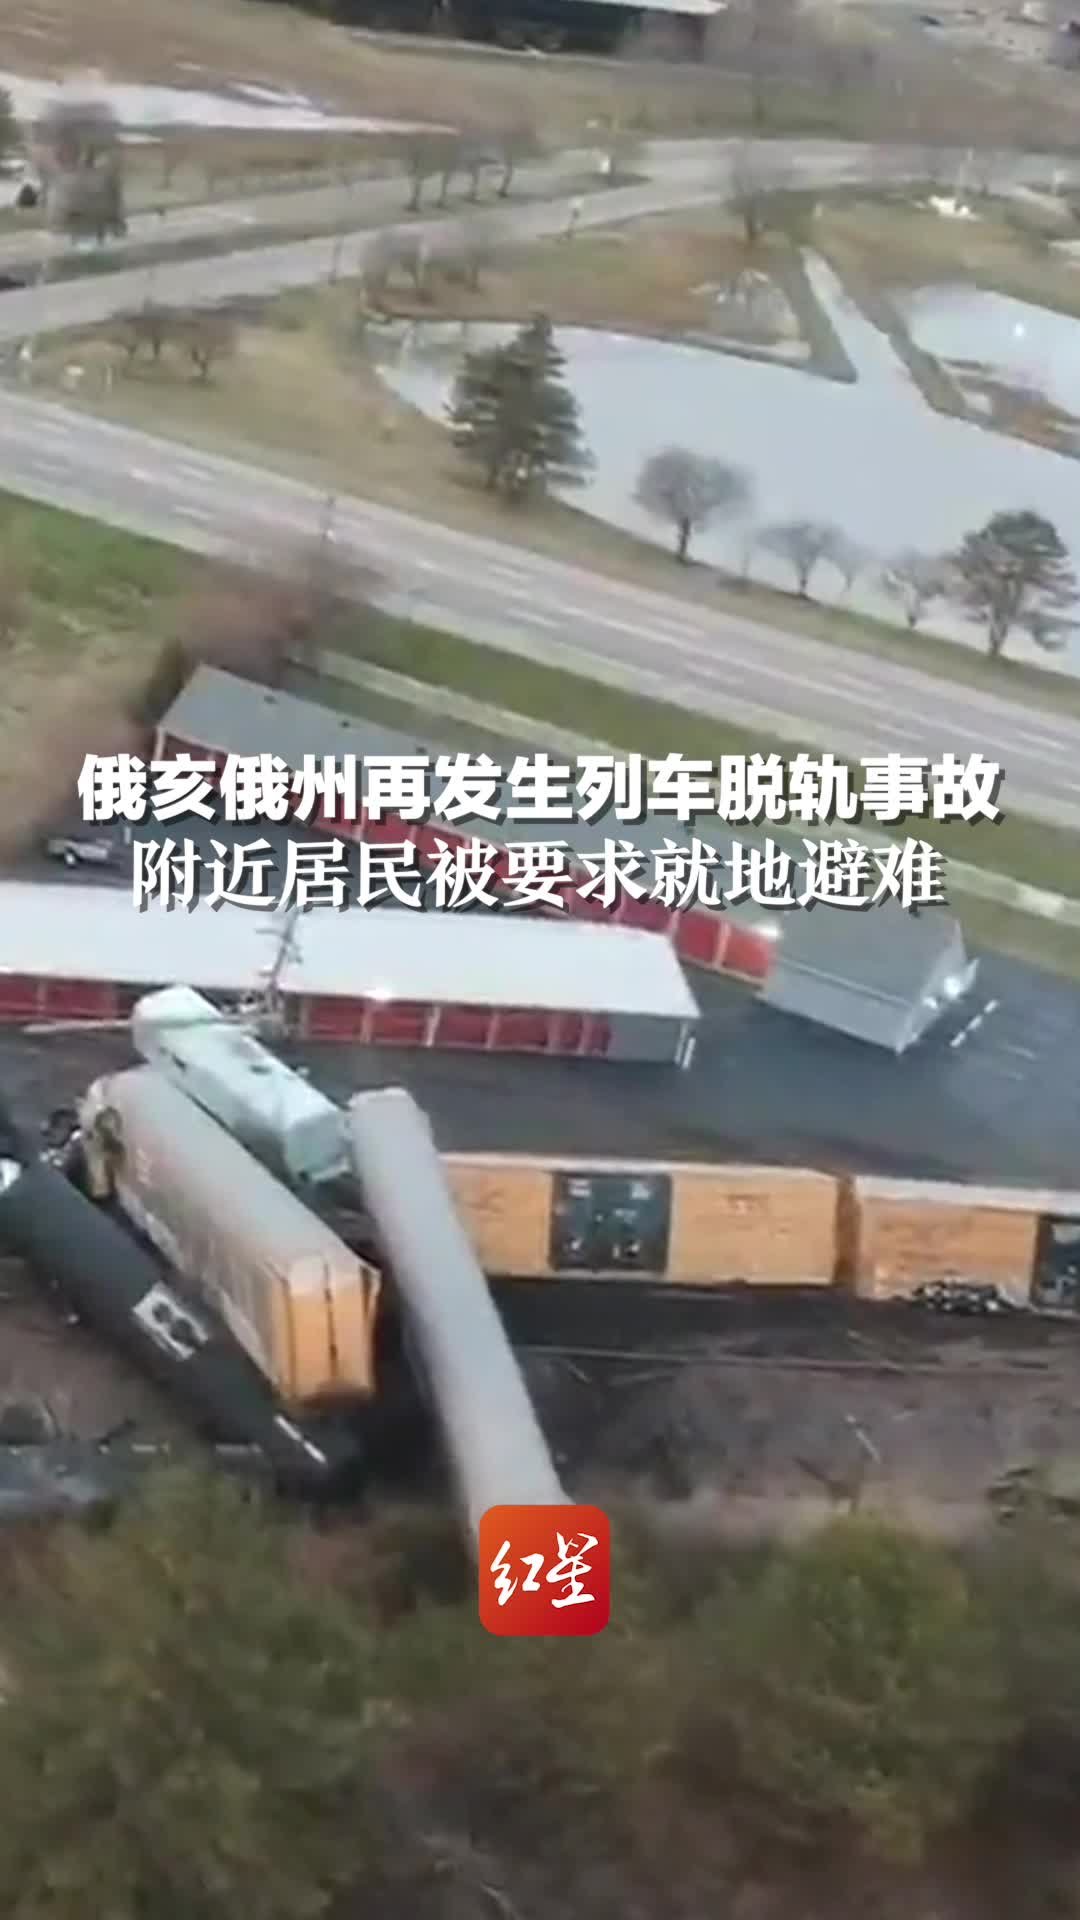 一旅客列车撞上泥石流脱线，动车司机不幸死亡，8人受伤 -名城苏州新闻中心